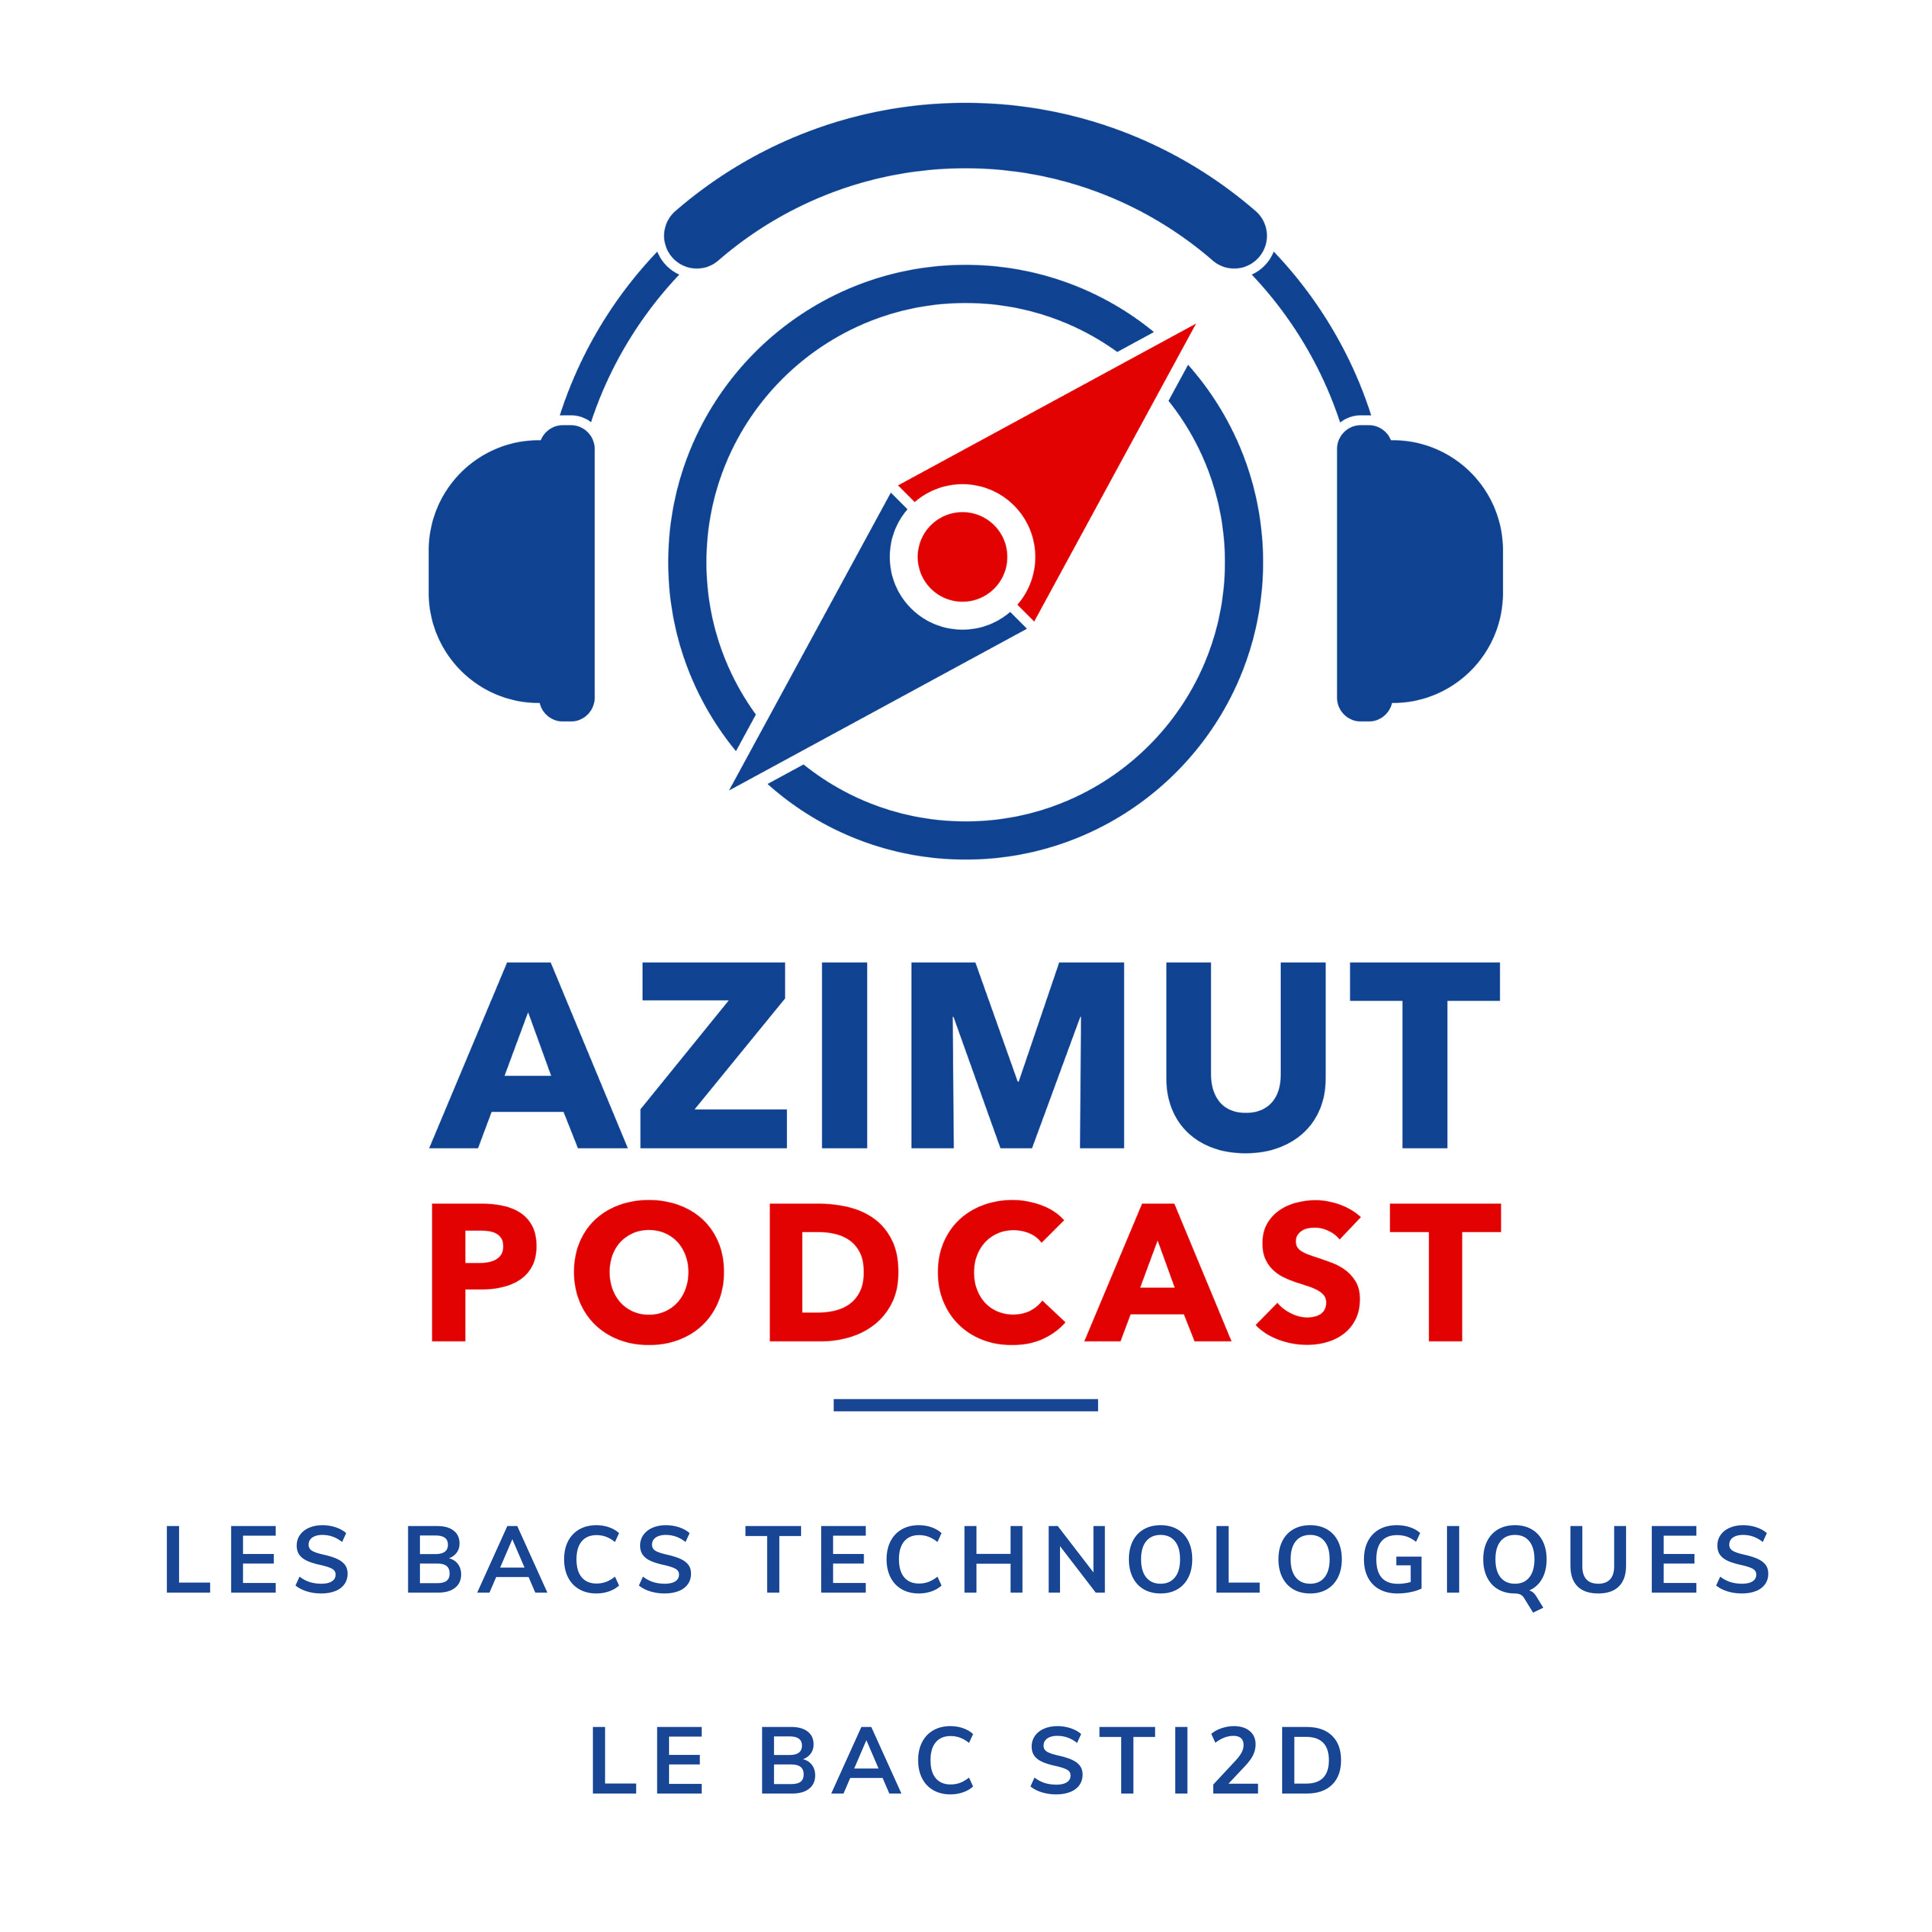 Le Bac STI2D | LES BACS TECHNOLOGIQUES